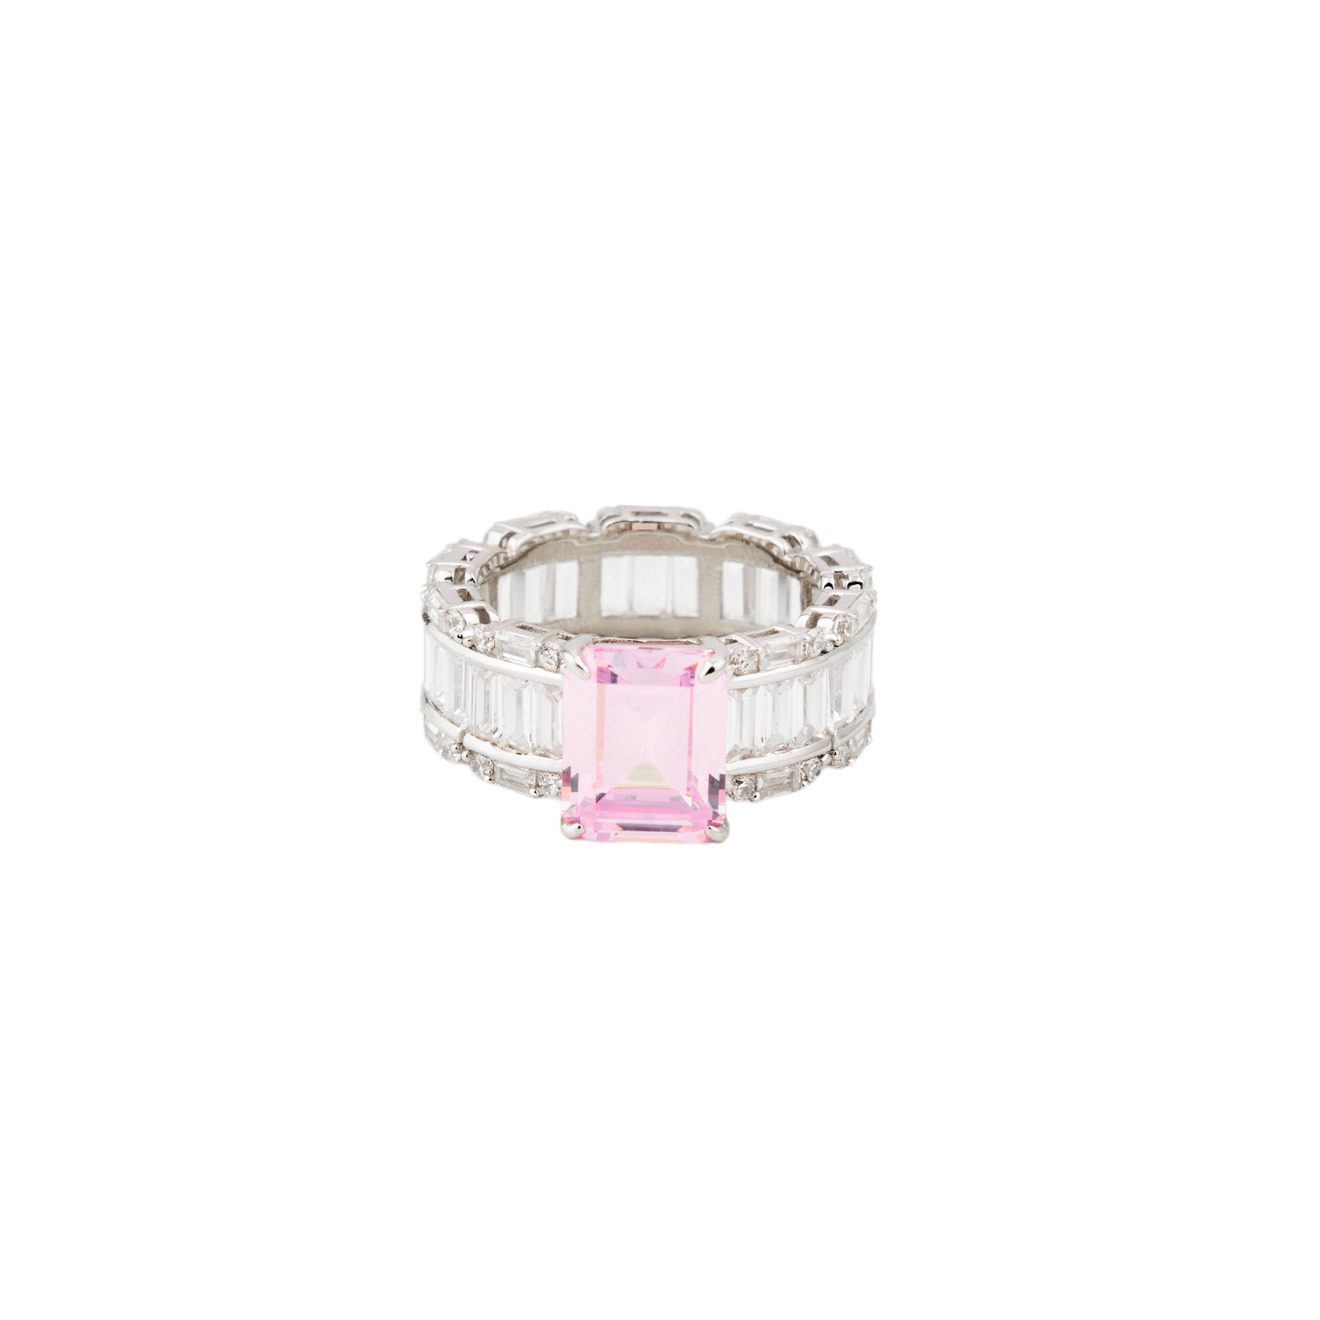 Holy Silver Кольцо из серебра с розовым кристаллом и паве из белых кристаллов огранки багет lisa smith золотистое кольцо с розовым кристаллом